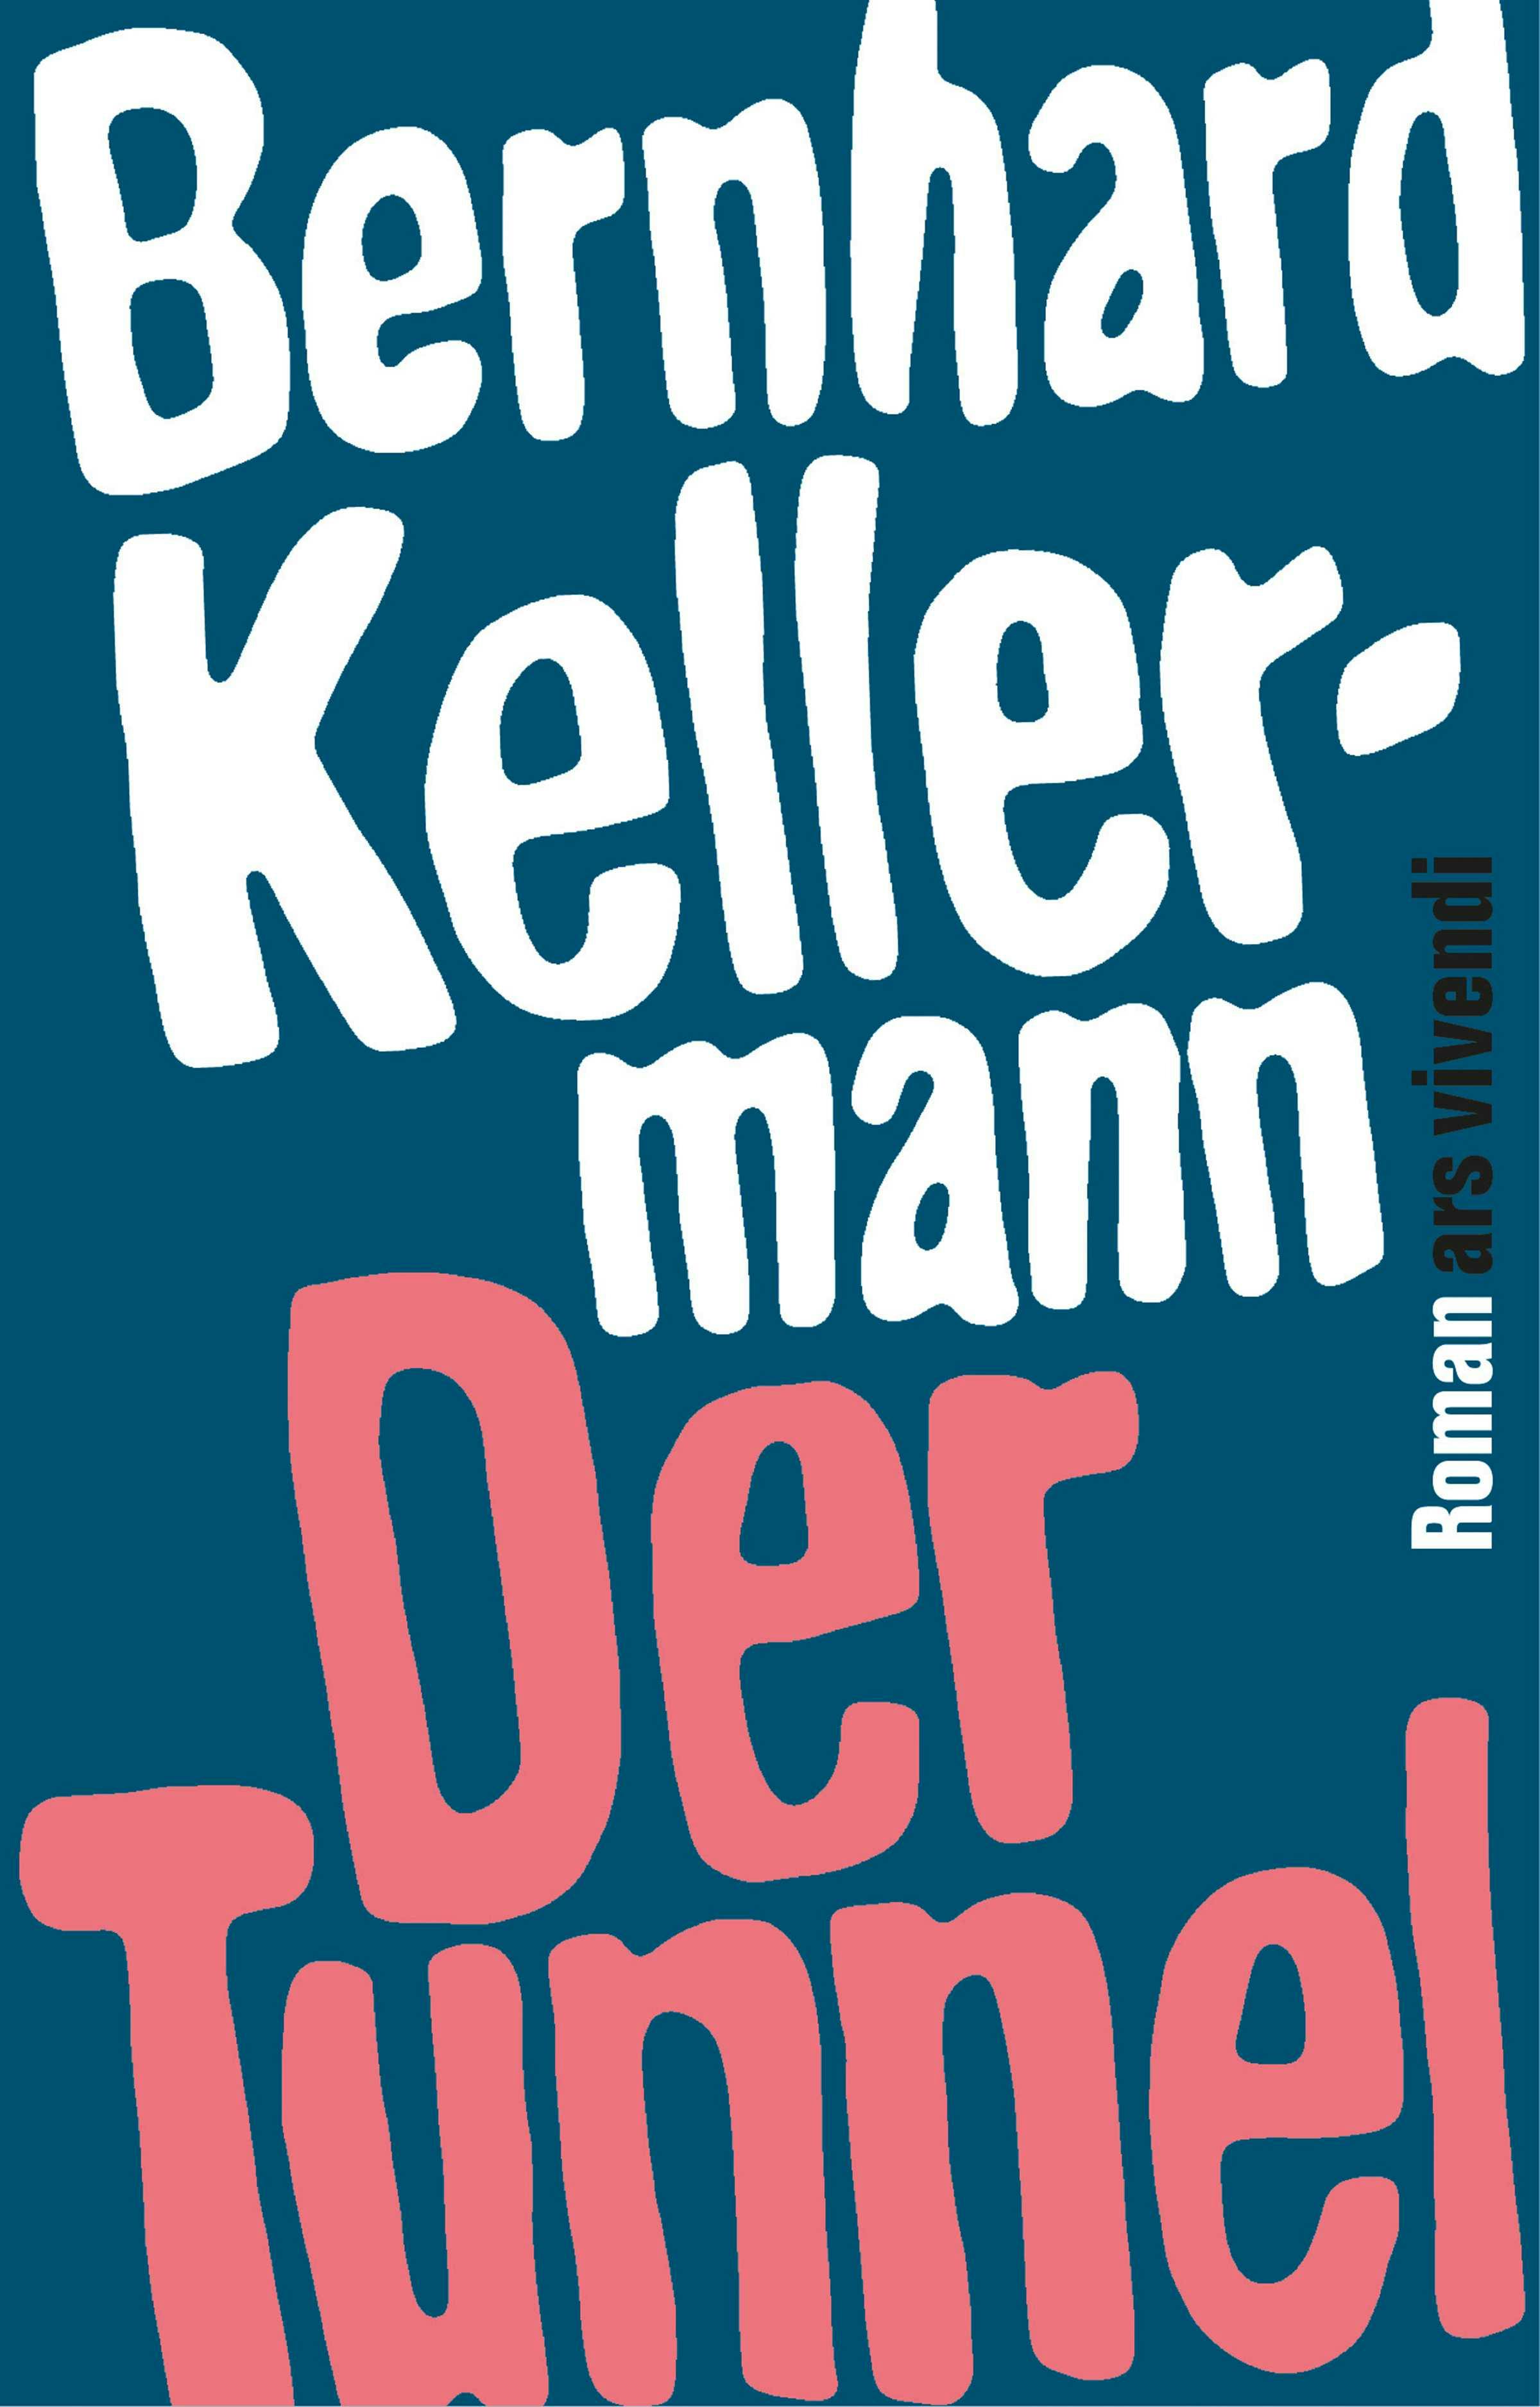 Der Tunnel (eBook) - Bernhard Kellermann